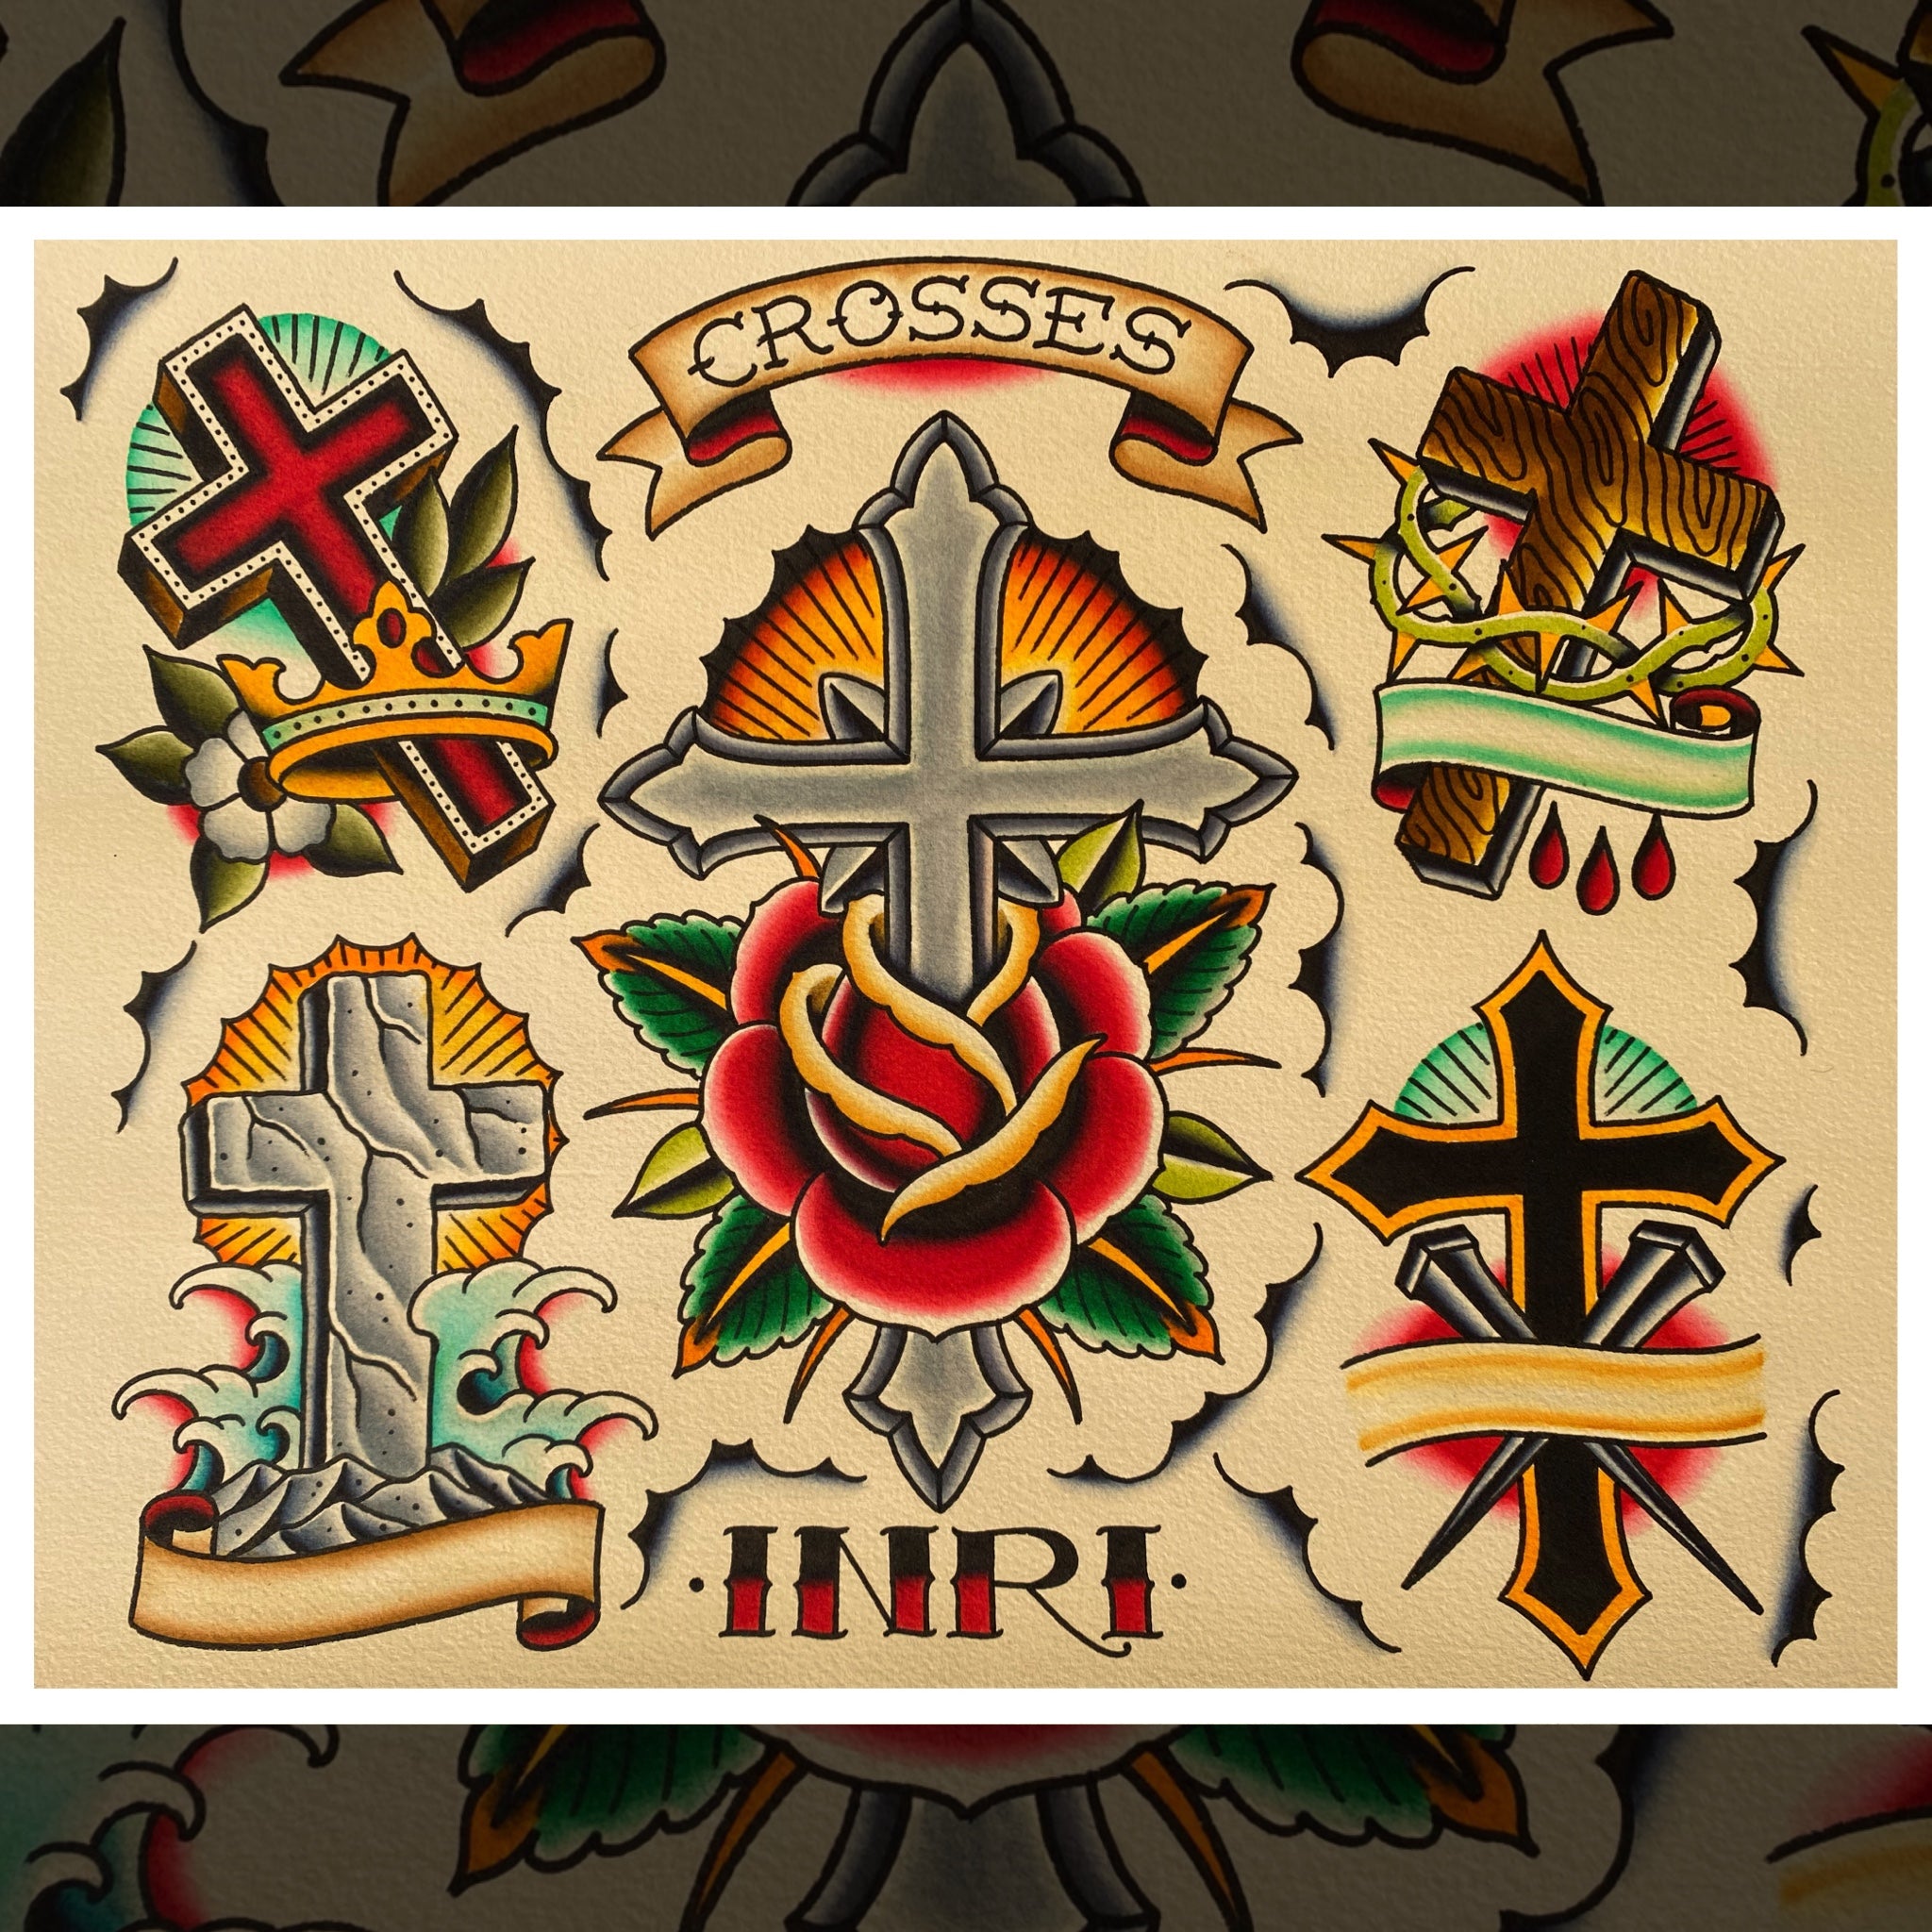 6 Cross Tattoo's - A Sticker Pack of 6 Individual Cross Tattoo's